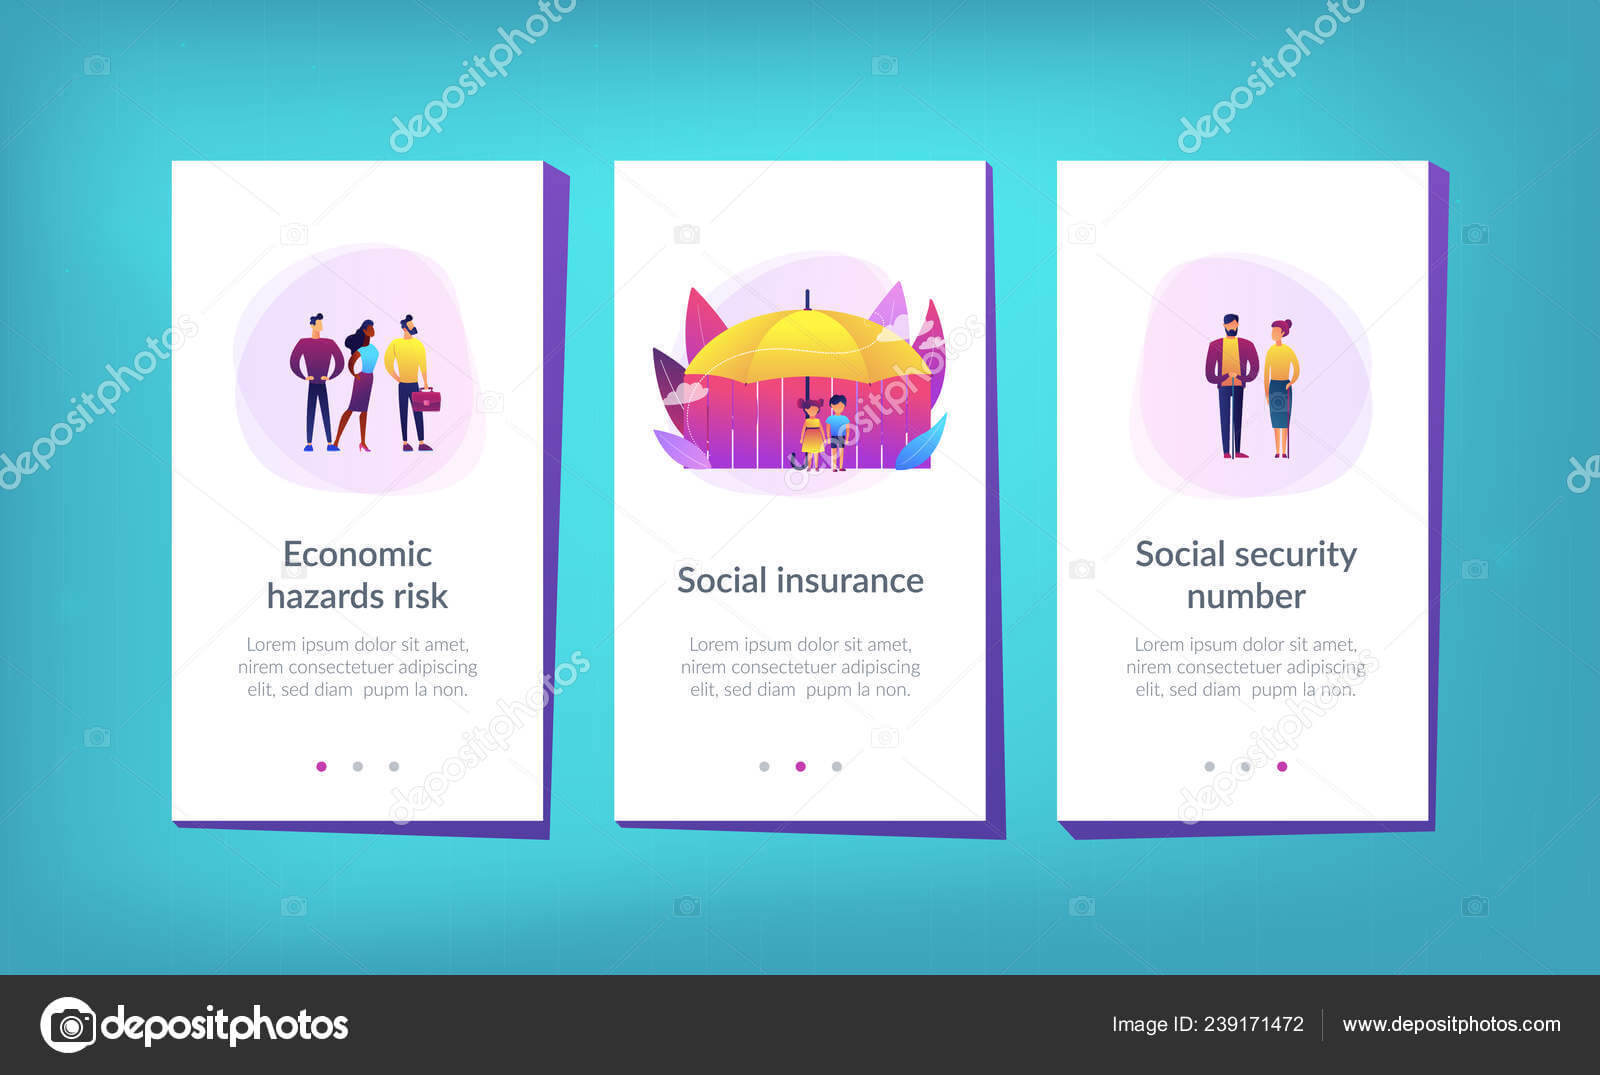 Blank Social Security Card Template | Social Insurance App In Social Security Card Template Download